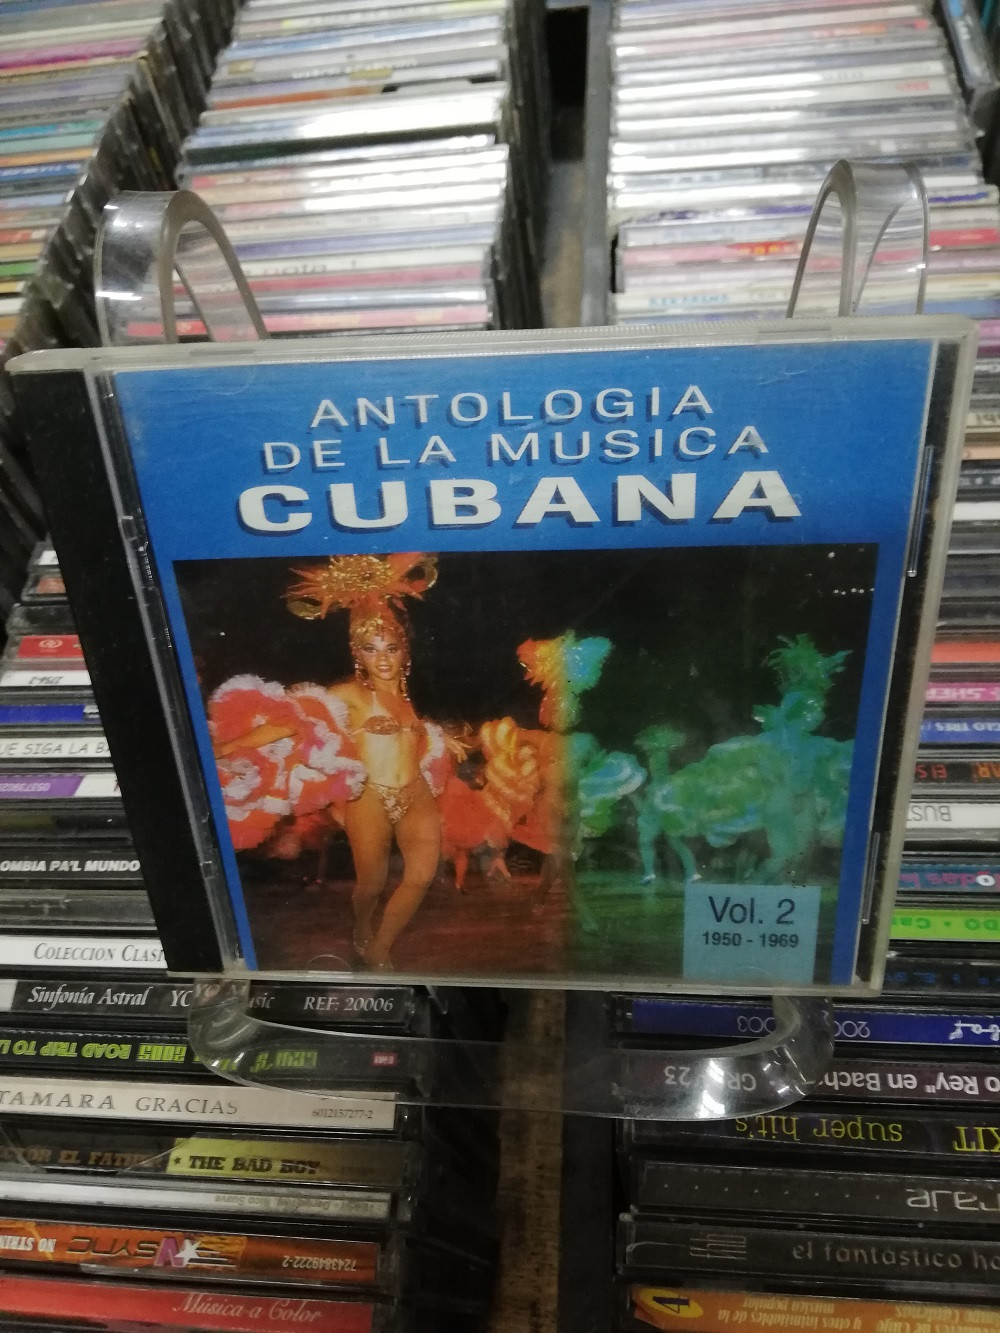 Imagen CD ANTOLOGIA DE LA MÚSICA CUBANA VOL. 2 1